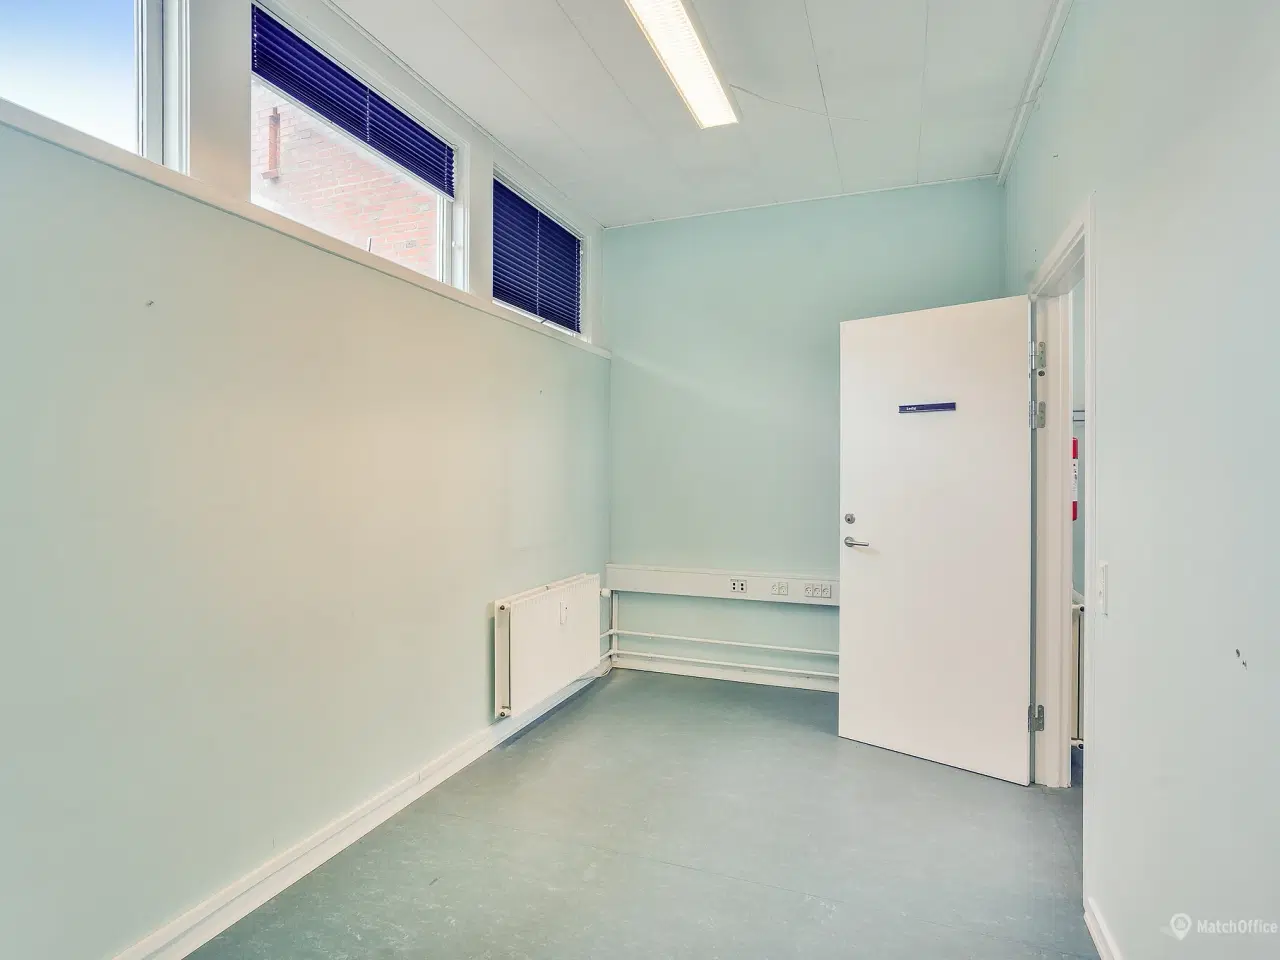 Billede 14 - Spændende kontorlokaler ved Indkøbscentret BROEN, i Esbjerg.